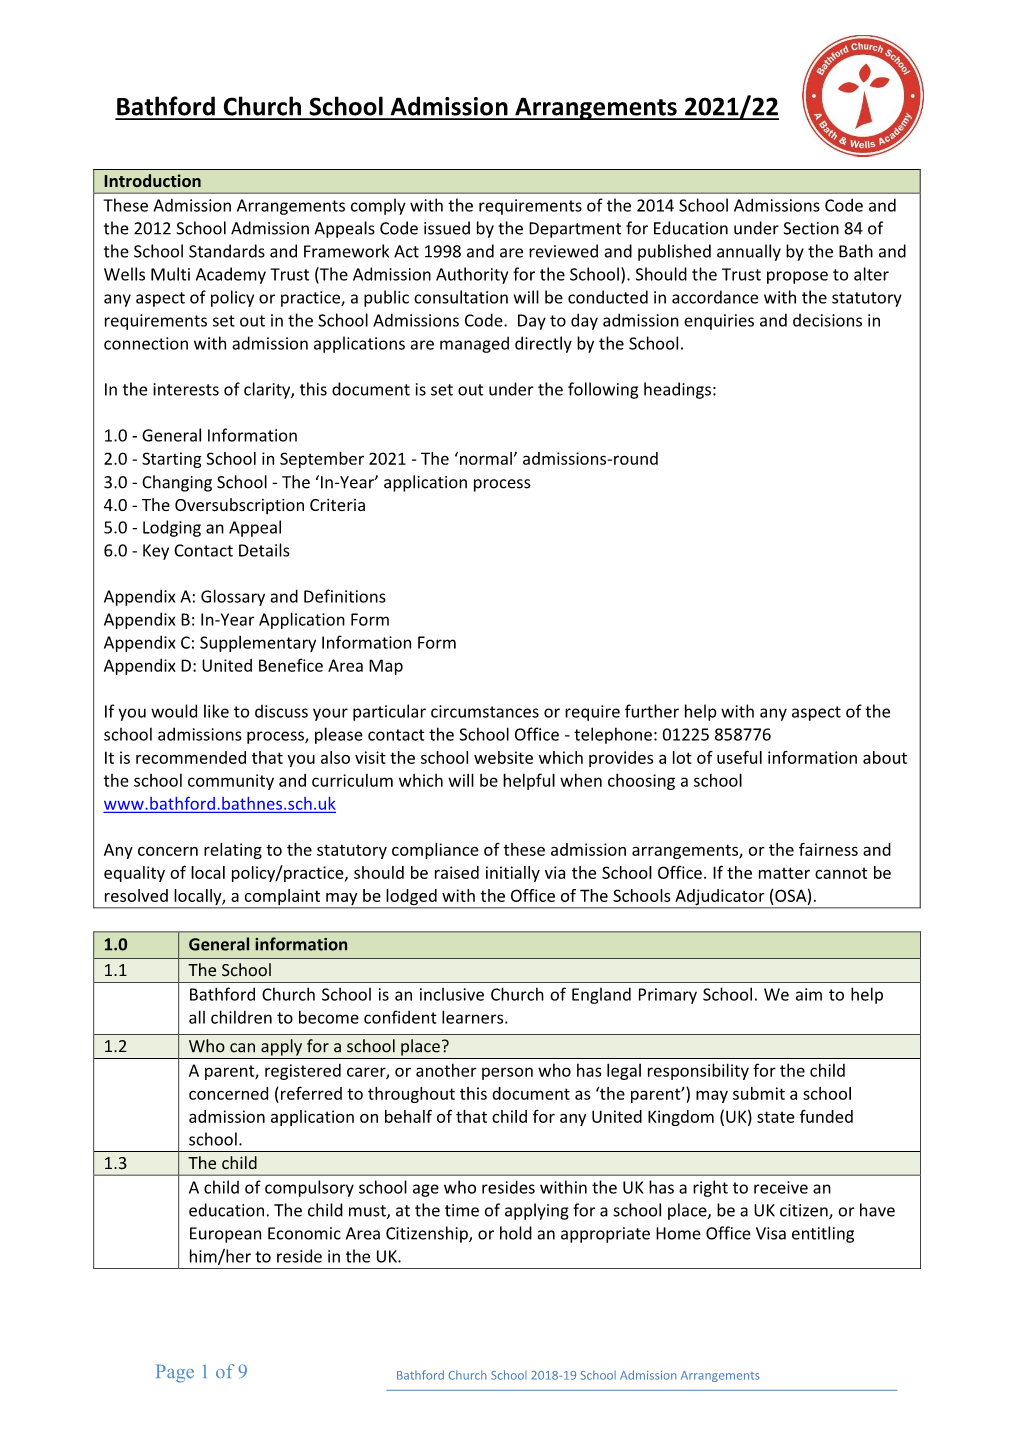 Bathford Church School Admissions Policy 2021-2022